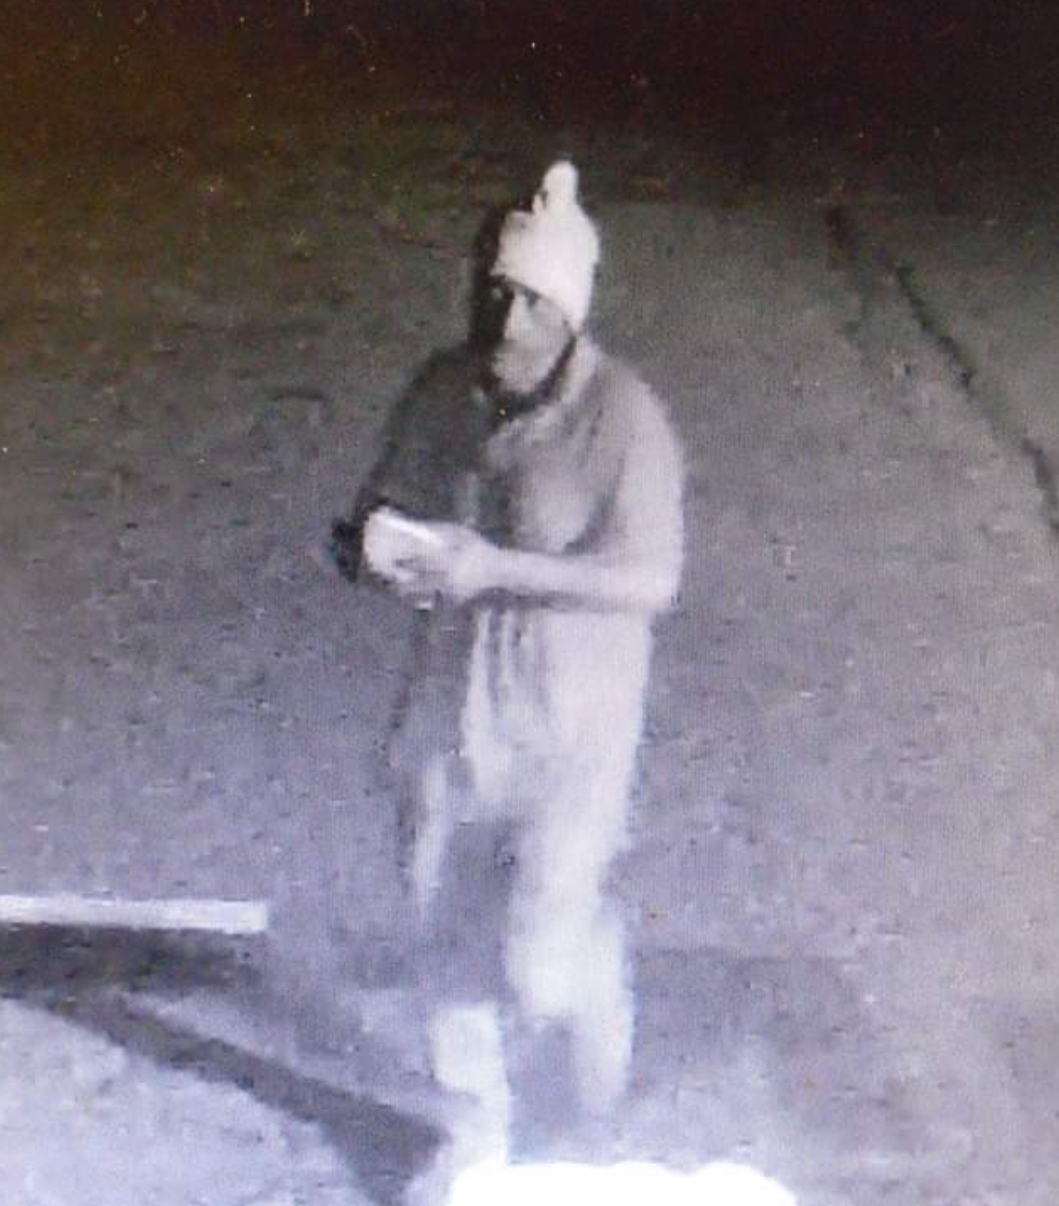 Burglar breaks in to La Morenita Restaurant in Livingston